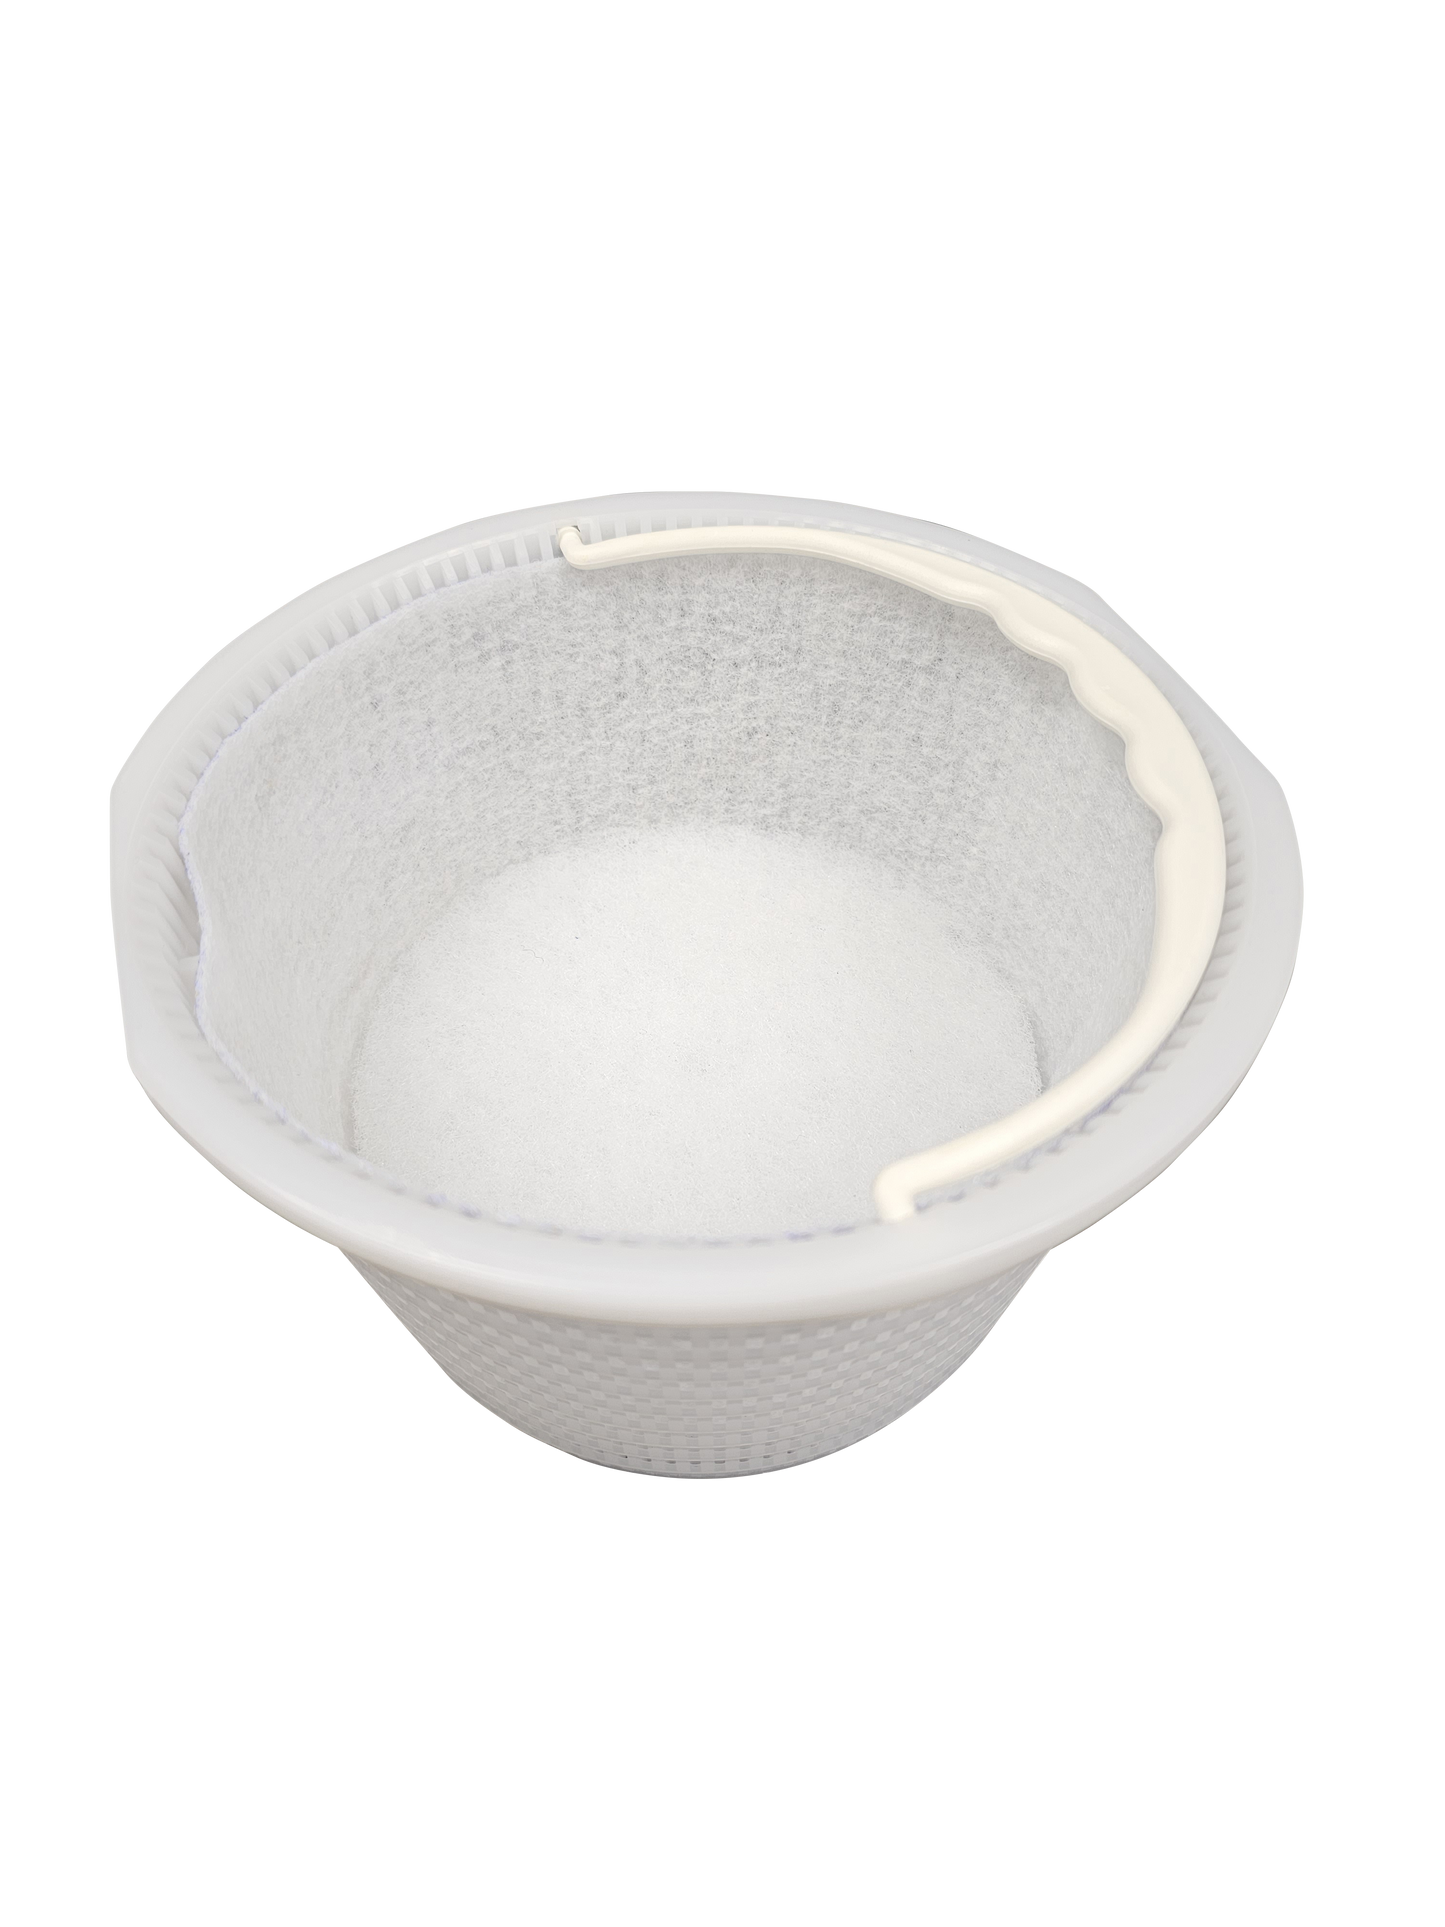 PureFlow Skimmerfilter: 1 Skimmervollfilter (inkl. Wandfilter) für Astral 17.5. Perfekte Vorfiltration sorgt für reduziertes Biofouling, 99 % Insektenschutz, schont den Hauptfilter. Chlorfreie Desinfektion.  Unkomplizierter Filtertausch.